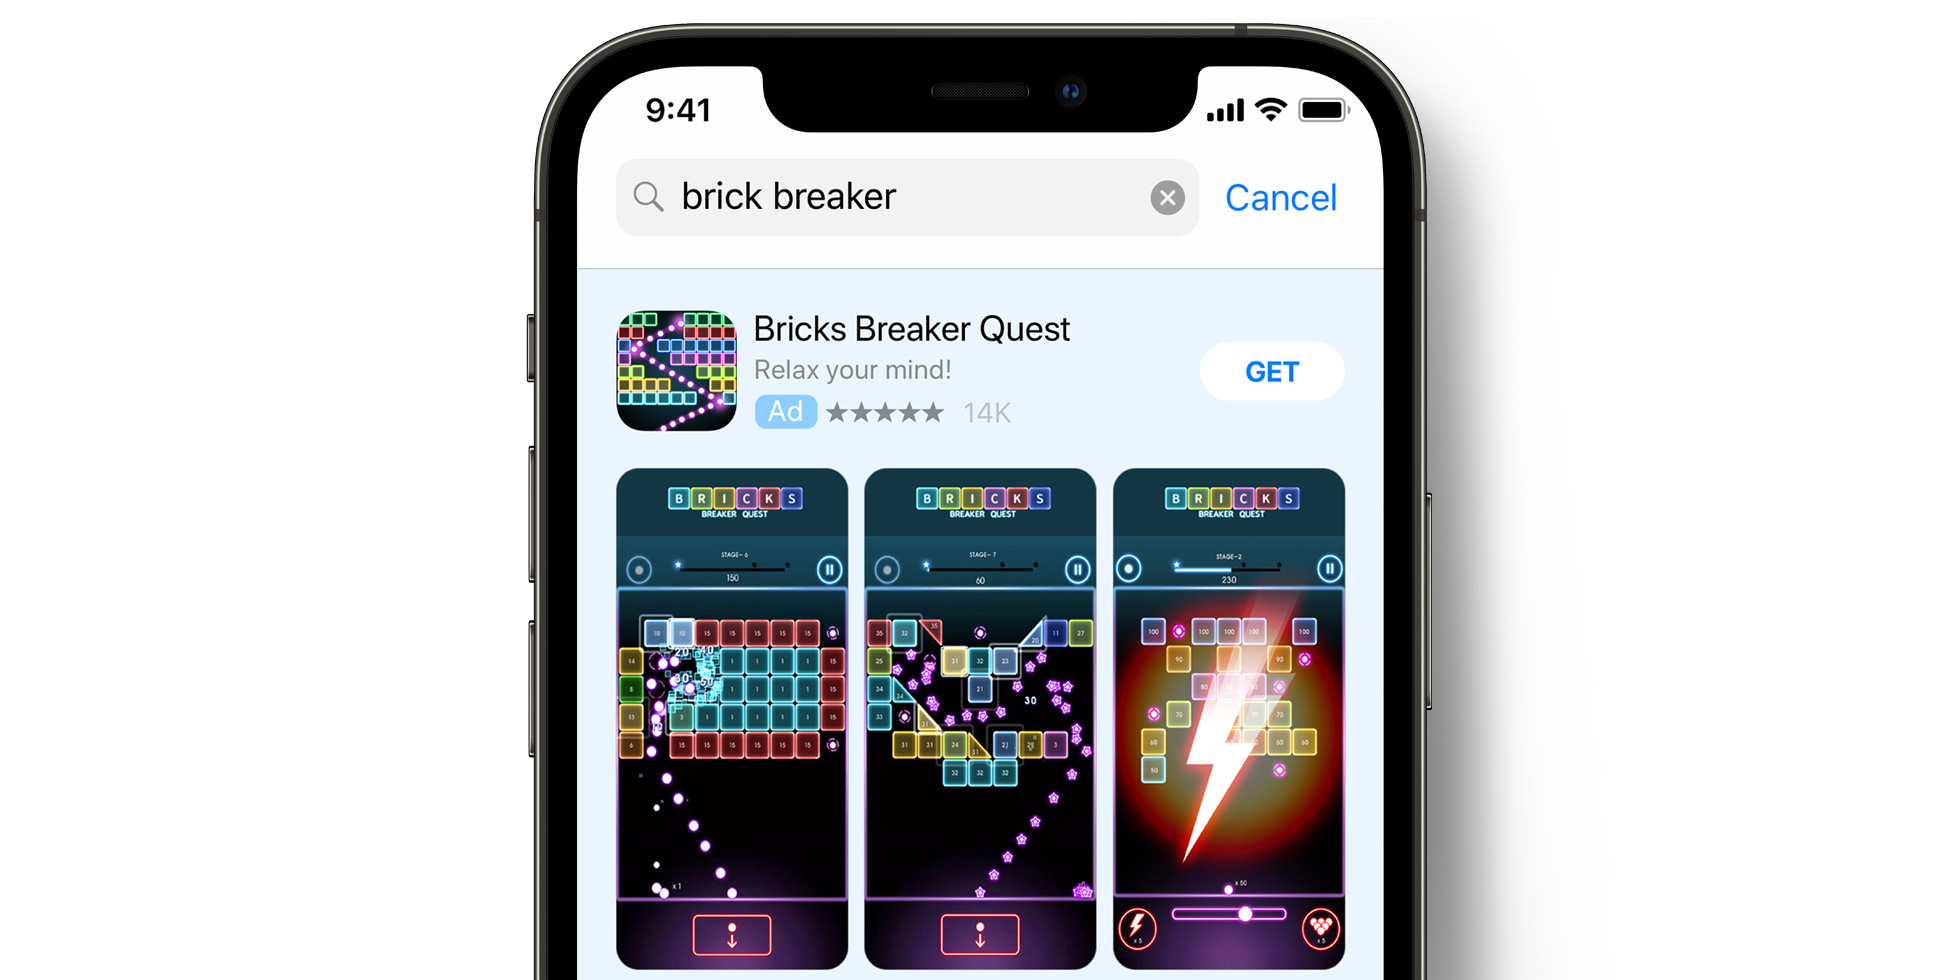 Bricks Breaker Quest Anzeige im App Store